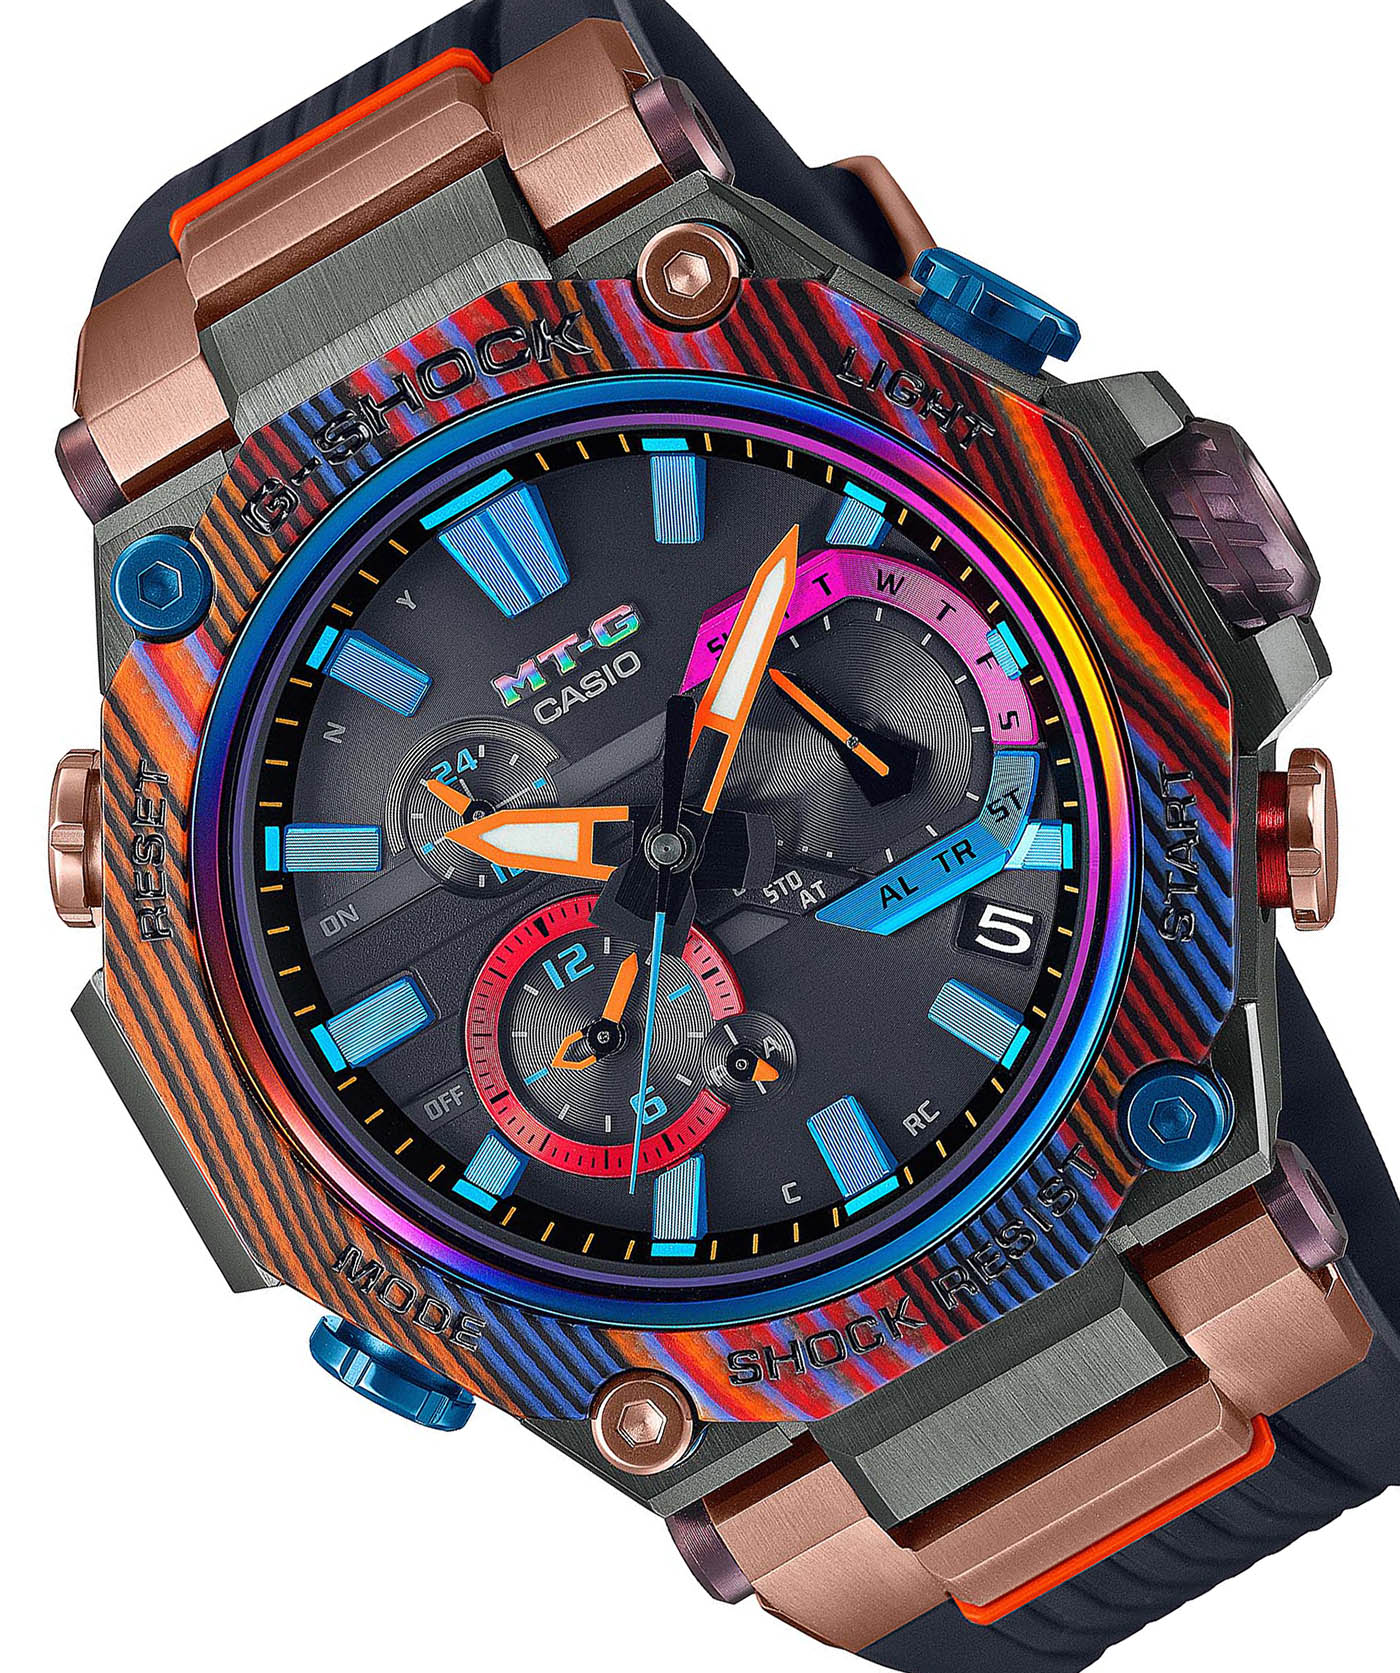 Casio представляет часы G-Shock MTGB2000XMG1 ограниченной серии